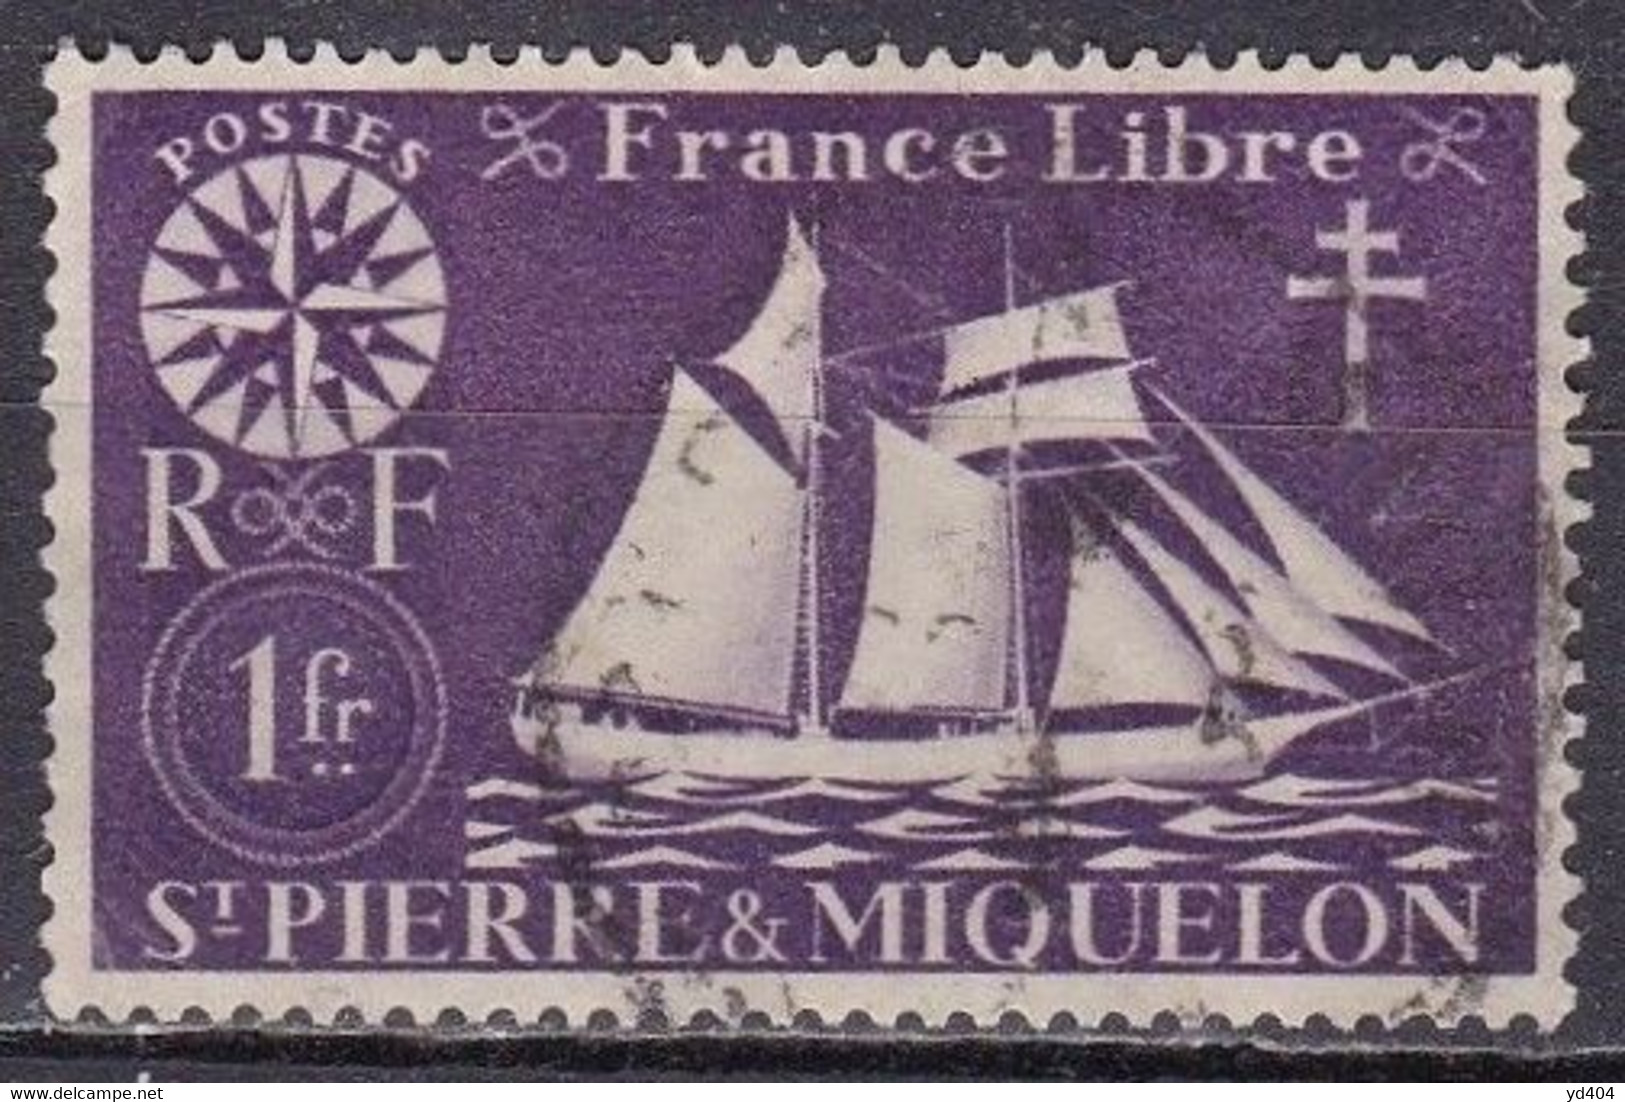 PM-003 – ST PIERRE & MIQUELON – 1942 – FISHING SCHOONER – SG # 328 USED 3,20 € - Oblitérés